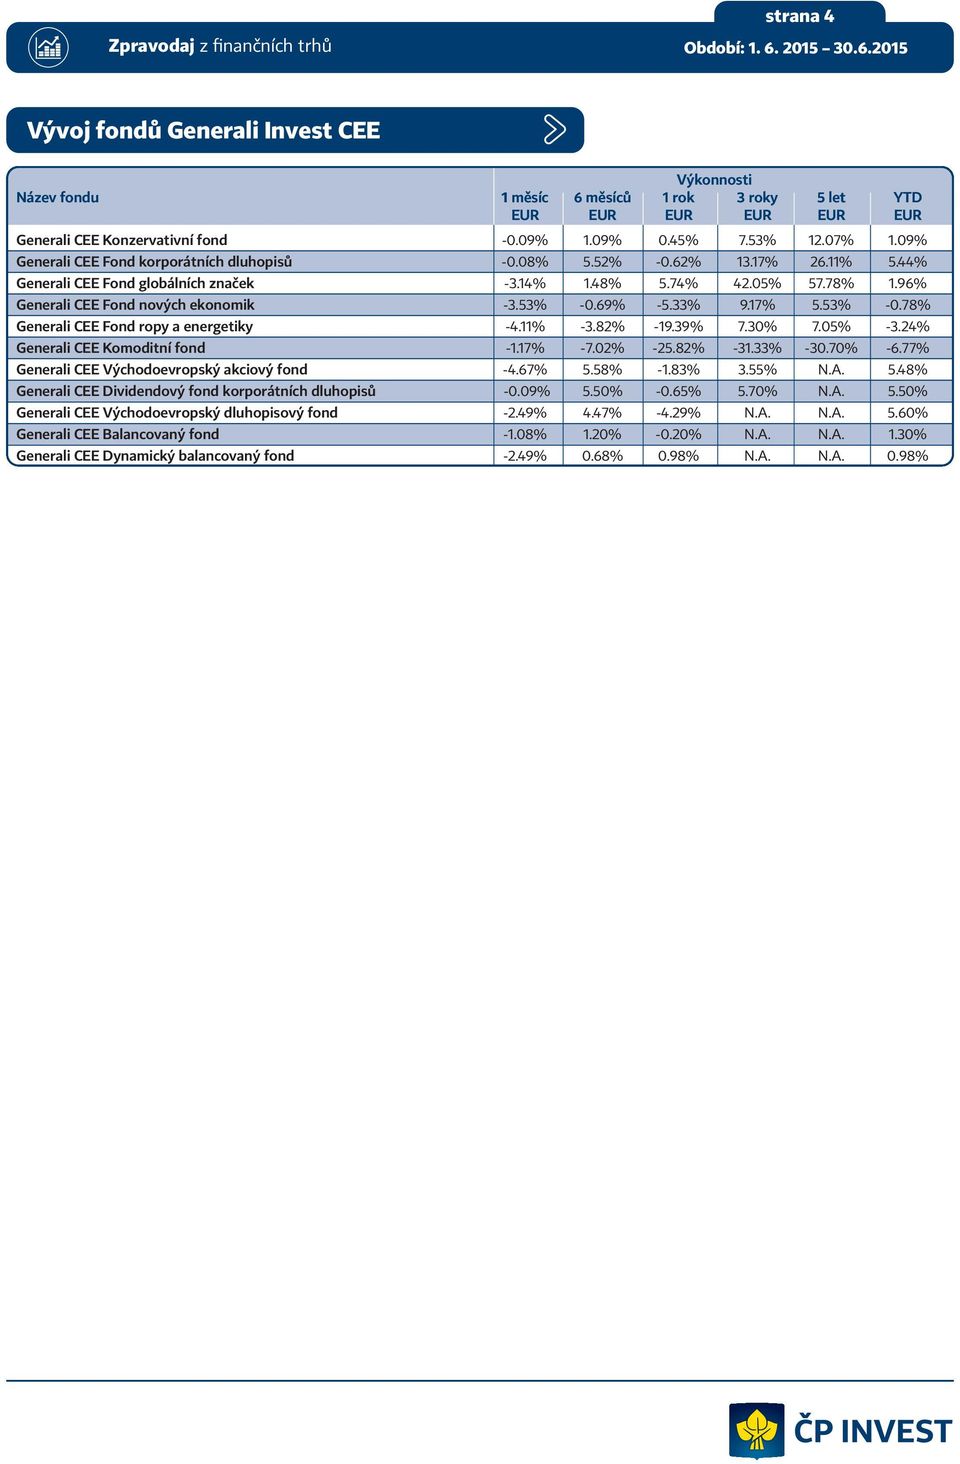 53% -0.69% -5.33% 9.17% 5.53% -0.78% Generali CEE Fond ropy a energetiky -4.11% -3.82% -19.39% 7.30% 7.05% -3.24% Generali CEE Komoditní fond -1.17% -7.02% -25.82% -31.33% -30.70% -6.